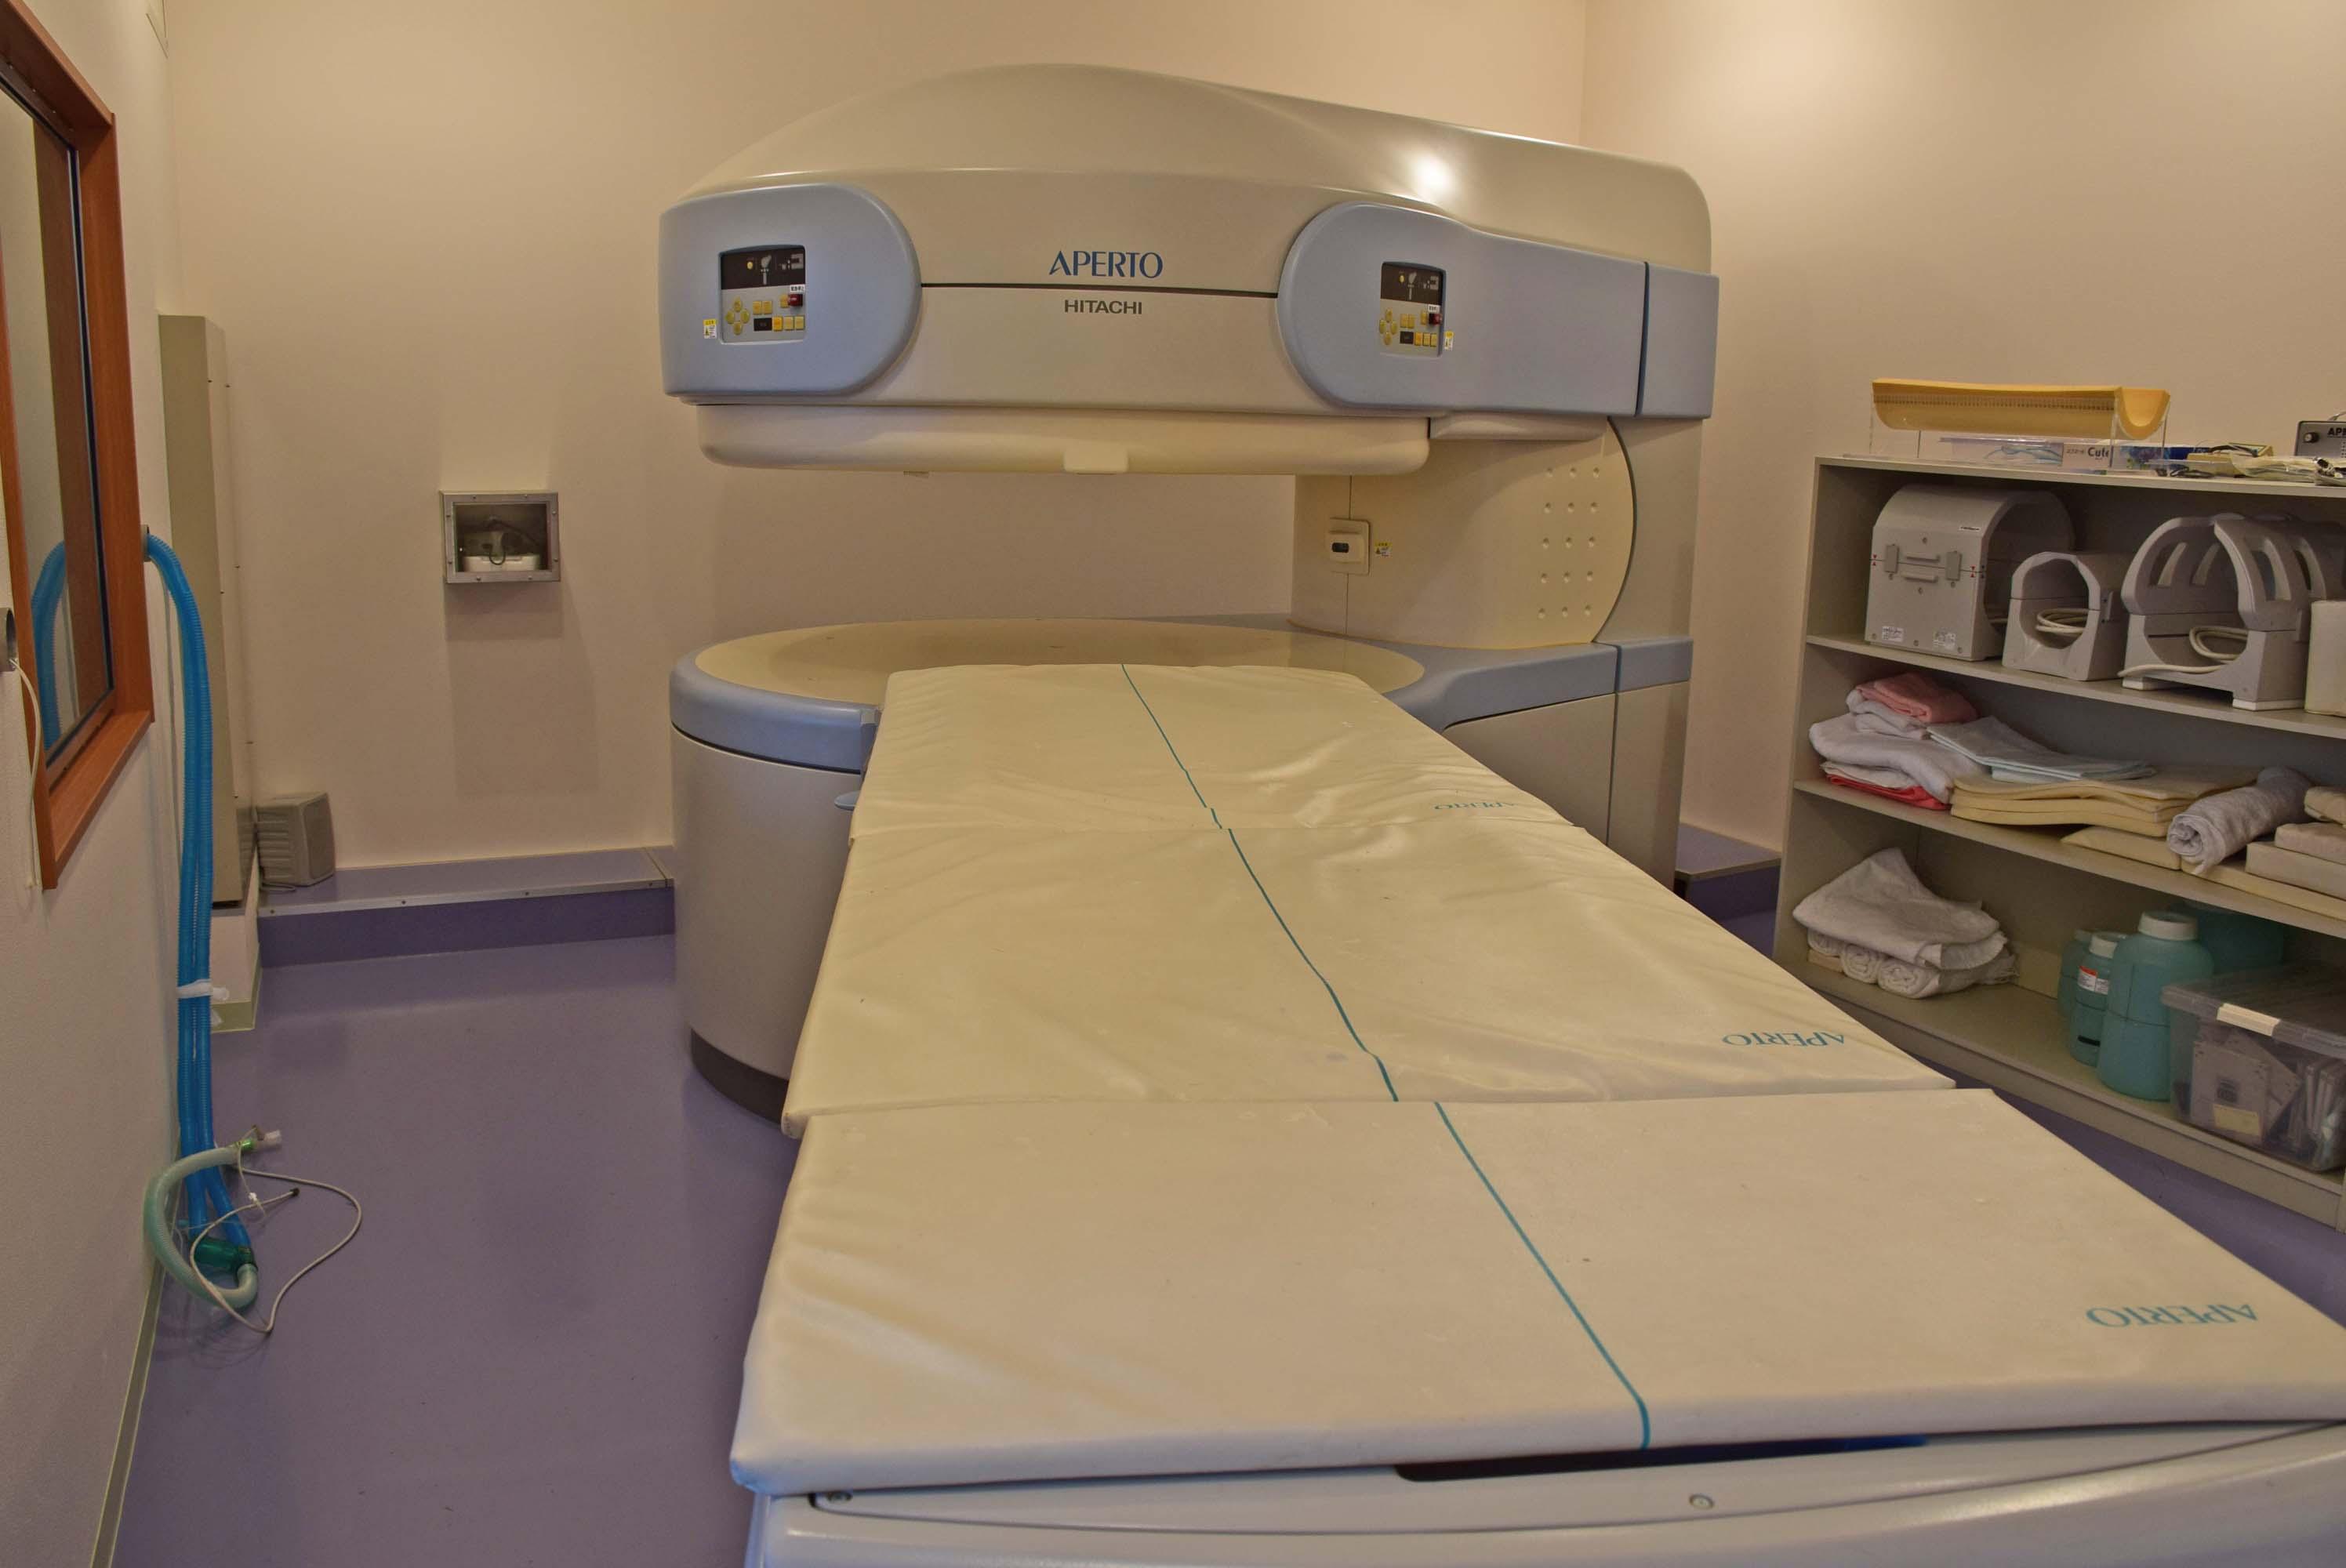 １階CT検査室の隣が放射線治療室、反対側がMRI検査室です。